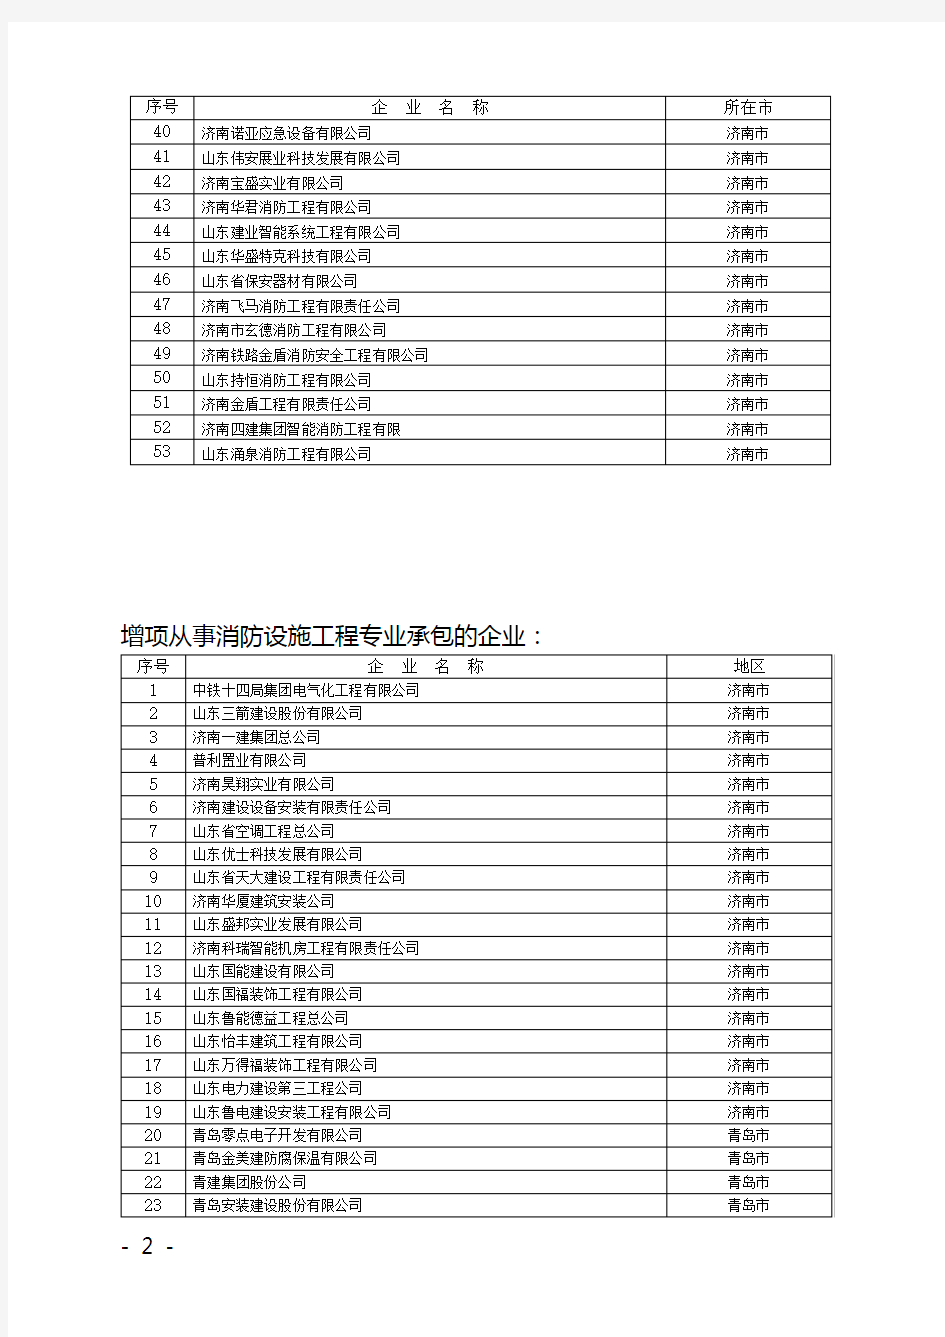 济南市主要消防工程企业名单